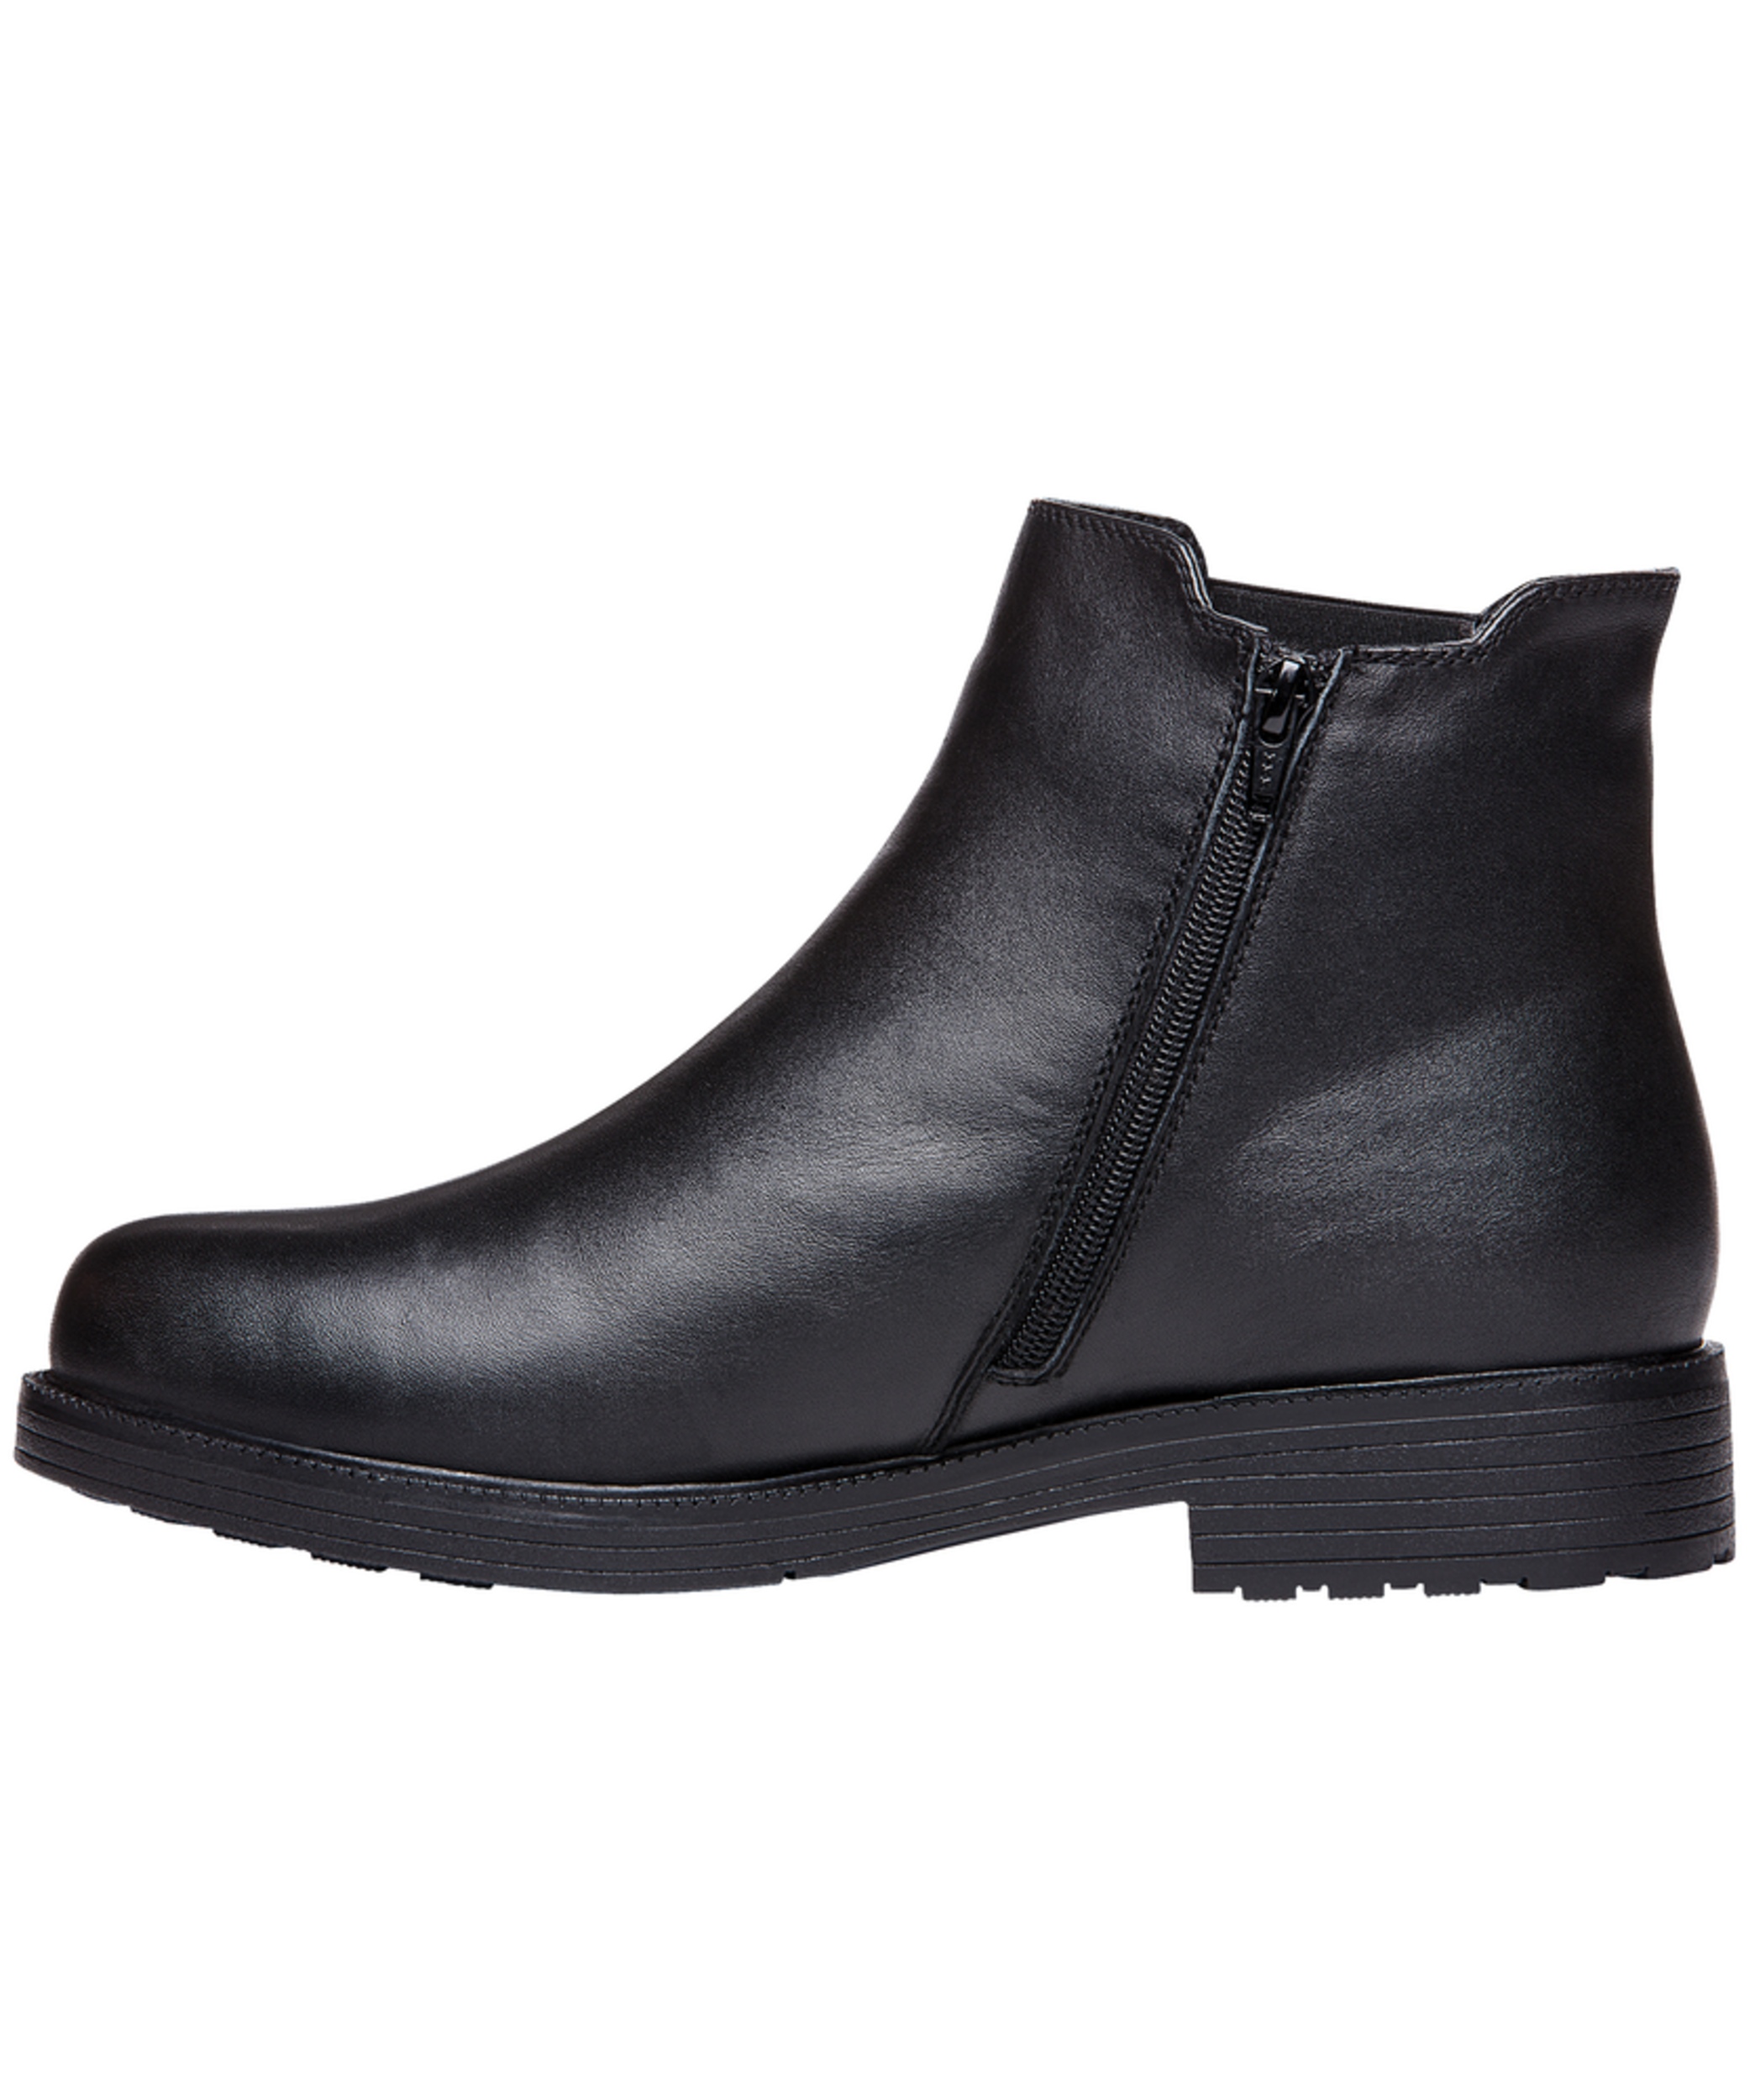 Propet Footwear Men's Truman High Cut Waterproof YKK Zipper Leather ...